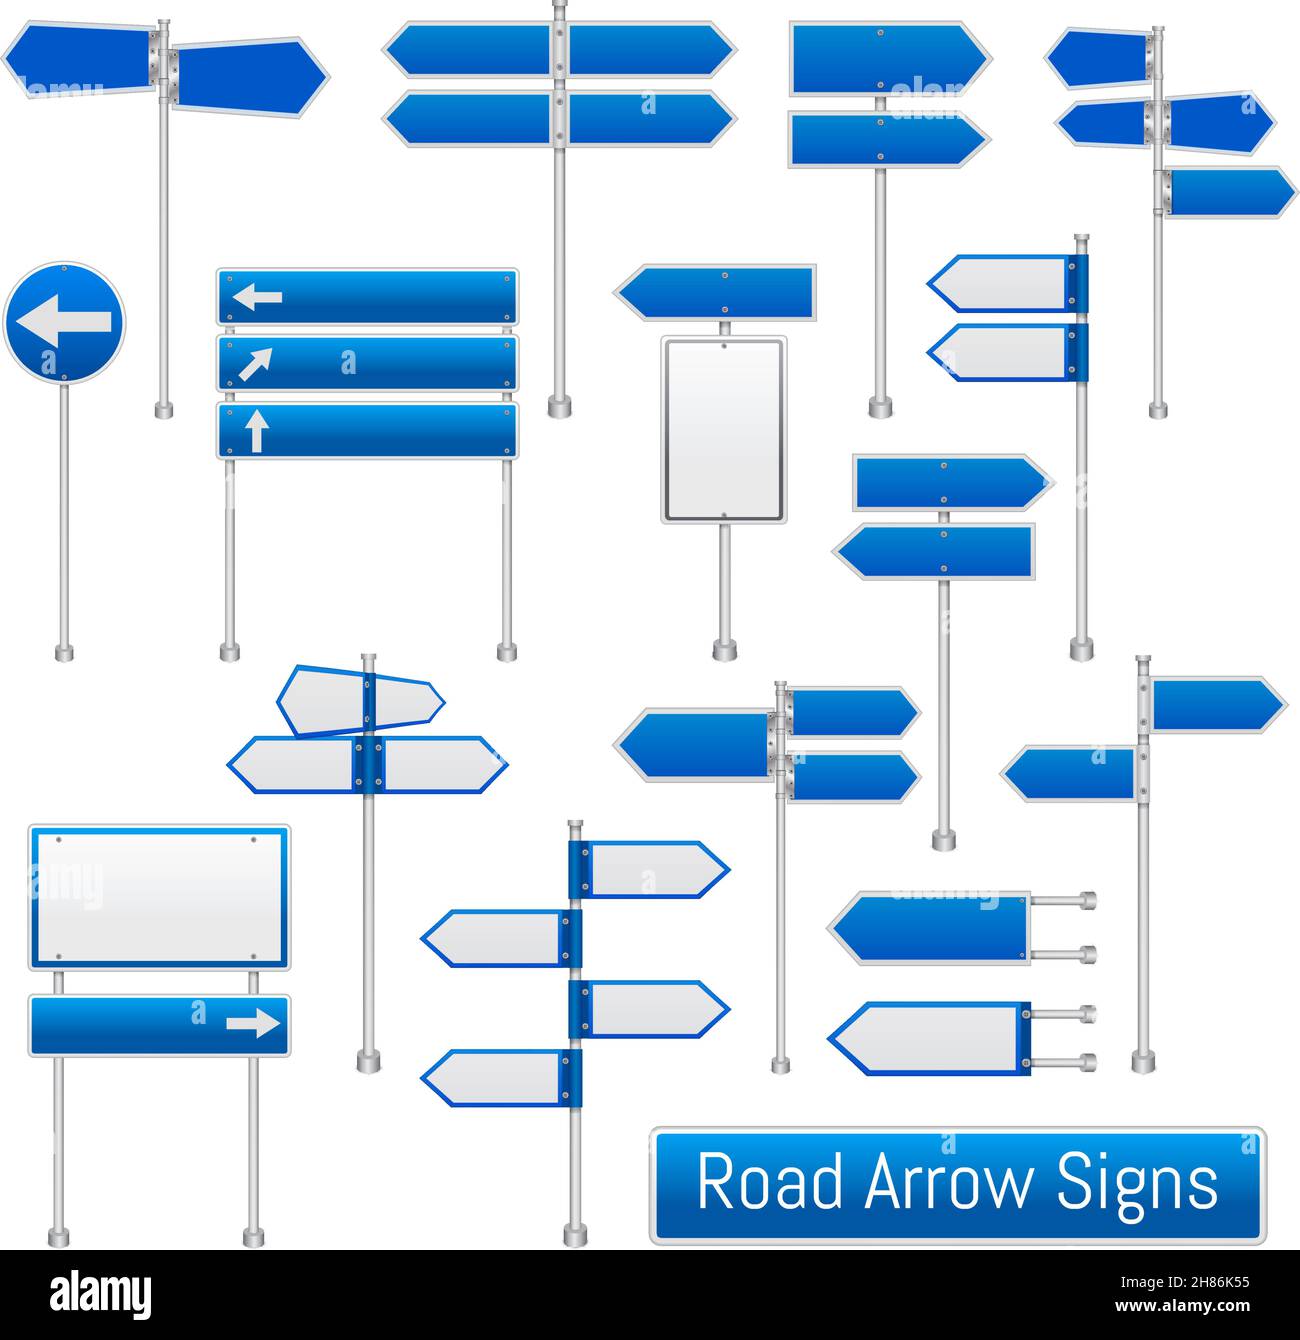 Blaue Pfeil Straßenschilder Signale realistische Verkehrsregelung Straßenschilder Sammlung Angabe der Richtung für Treiber isolierte Vektordarstellung Stock Vektor